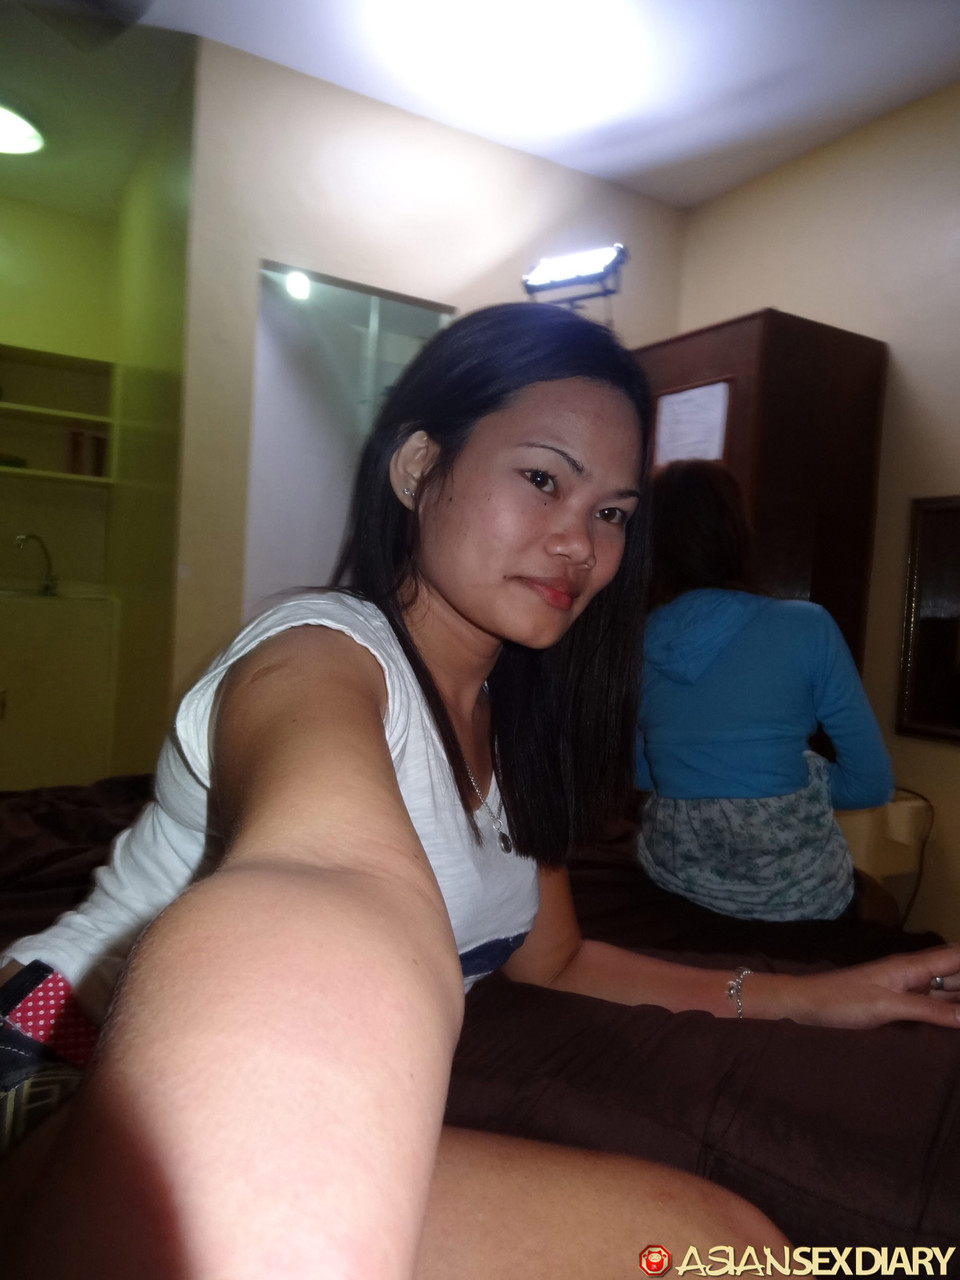 Horny Asian girls take selfies and fuck lucky tourist while enjoying free AC photo porno #422594962 | Asian Sex Diary Pics, Leann, Irish, Selfie, porno mobile